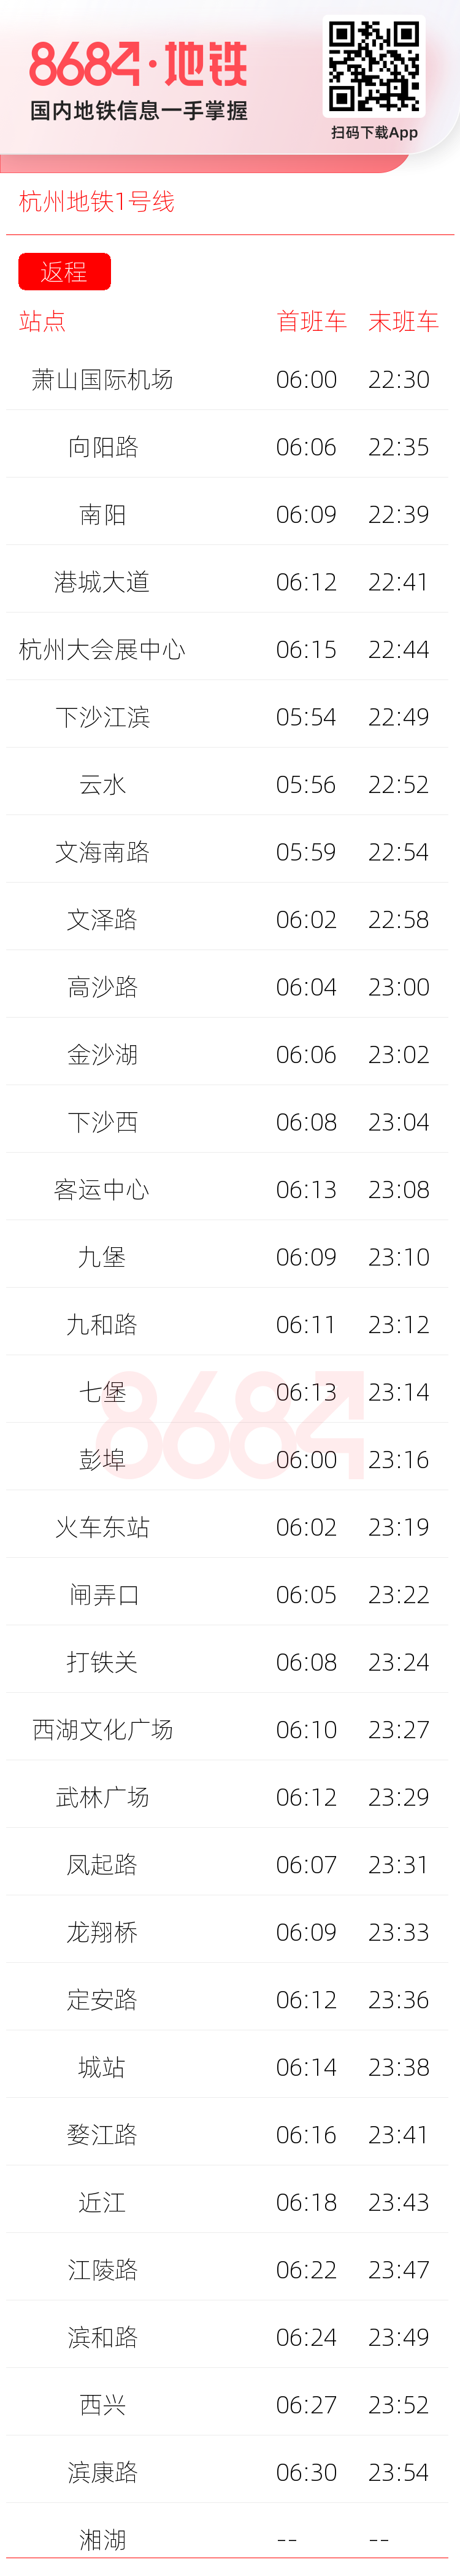 杭州地铁1号线运营时间表